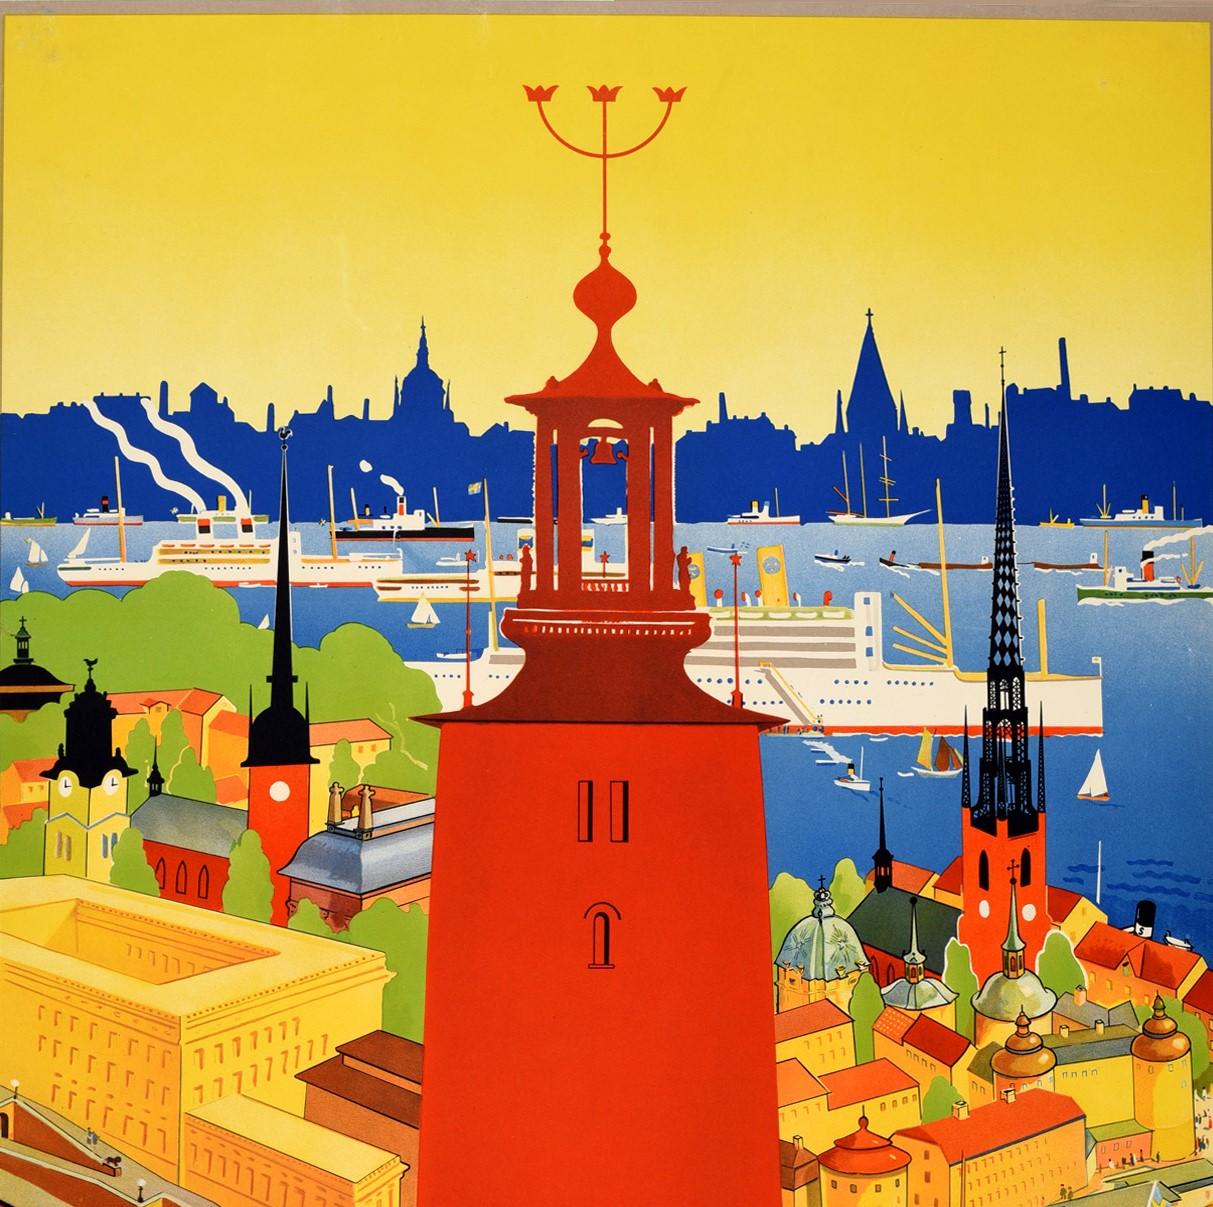 Original Vintage-Reiseplakat für Stockholm mit einer großartigen Illustration von Iwar Donner (1884-1964), die den roten Turm des Stockholmer Rathauses in der Mitte zeigt, mit den farbenfrohen Bäumen und historischen Gebäuden der Stadt im